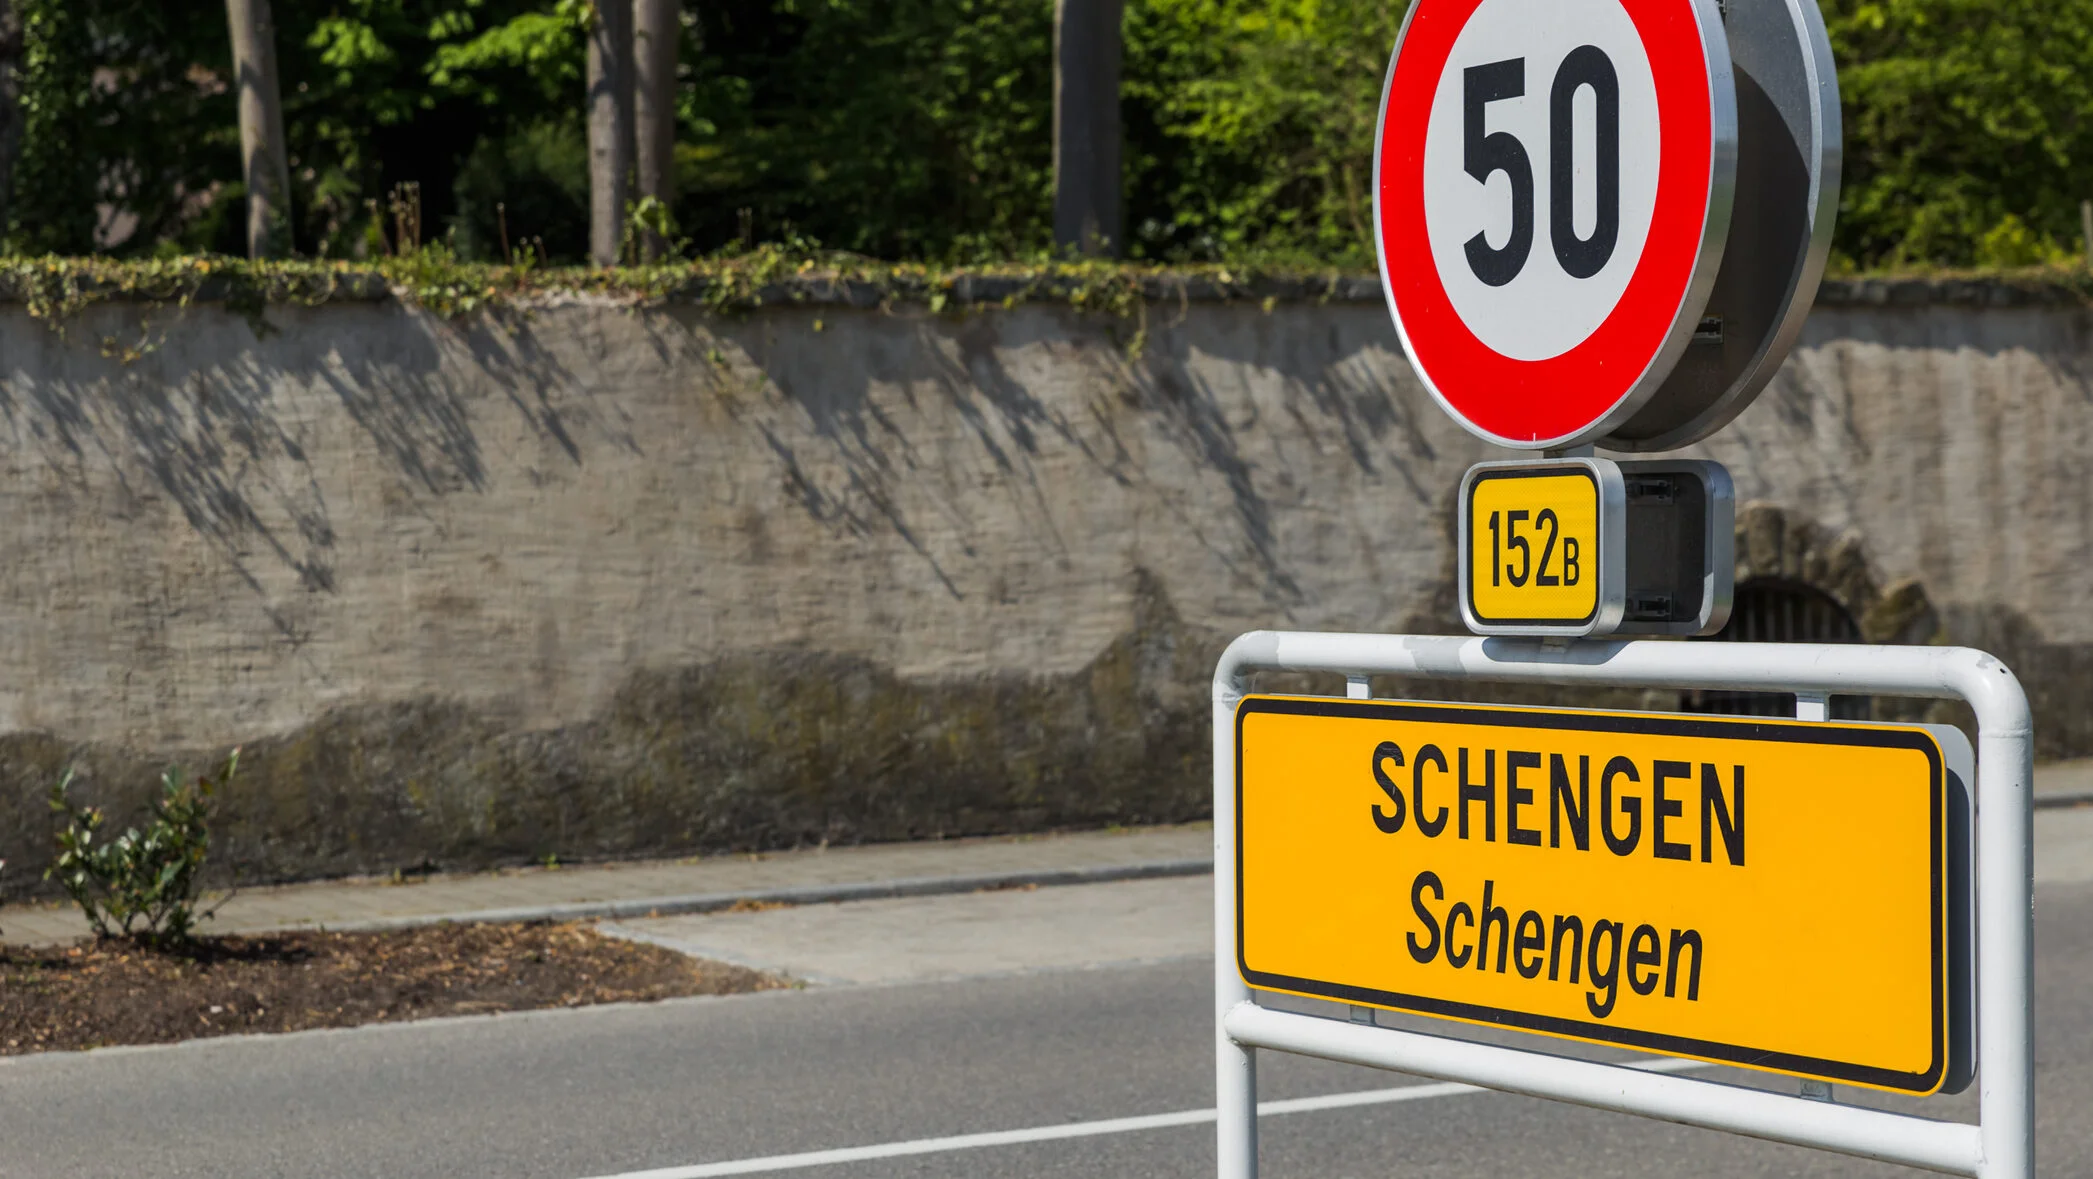 România în Schengen terestru. Noul mesaj care ne dă speranțe